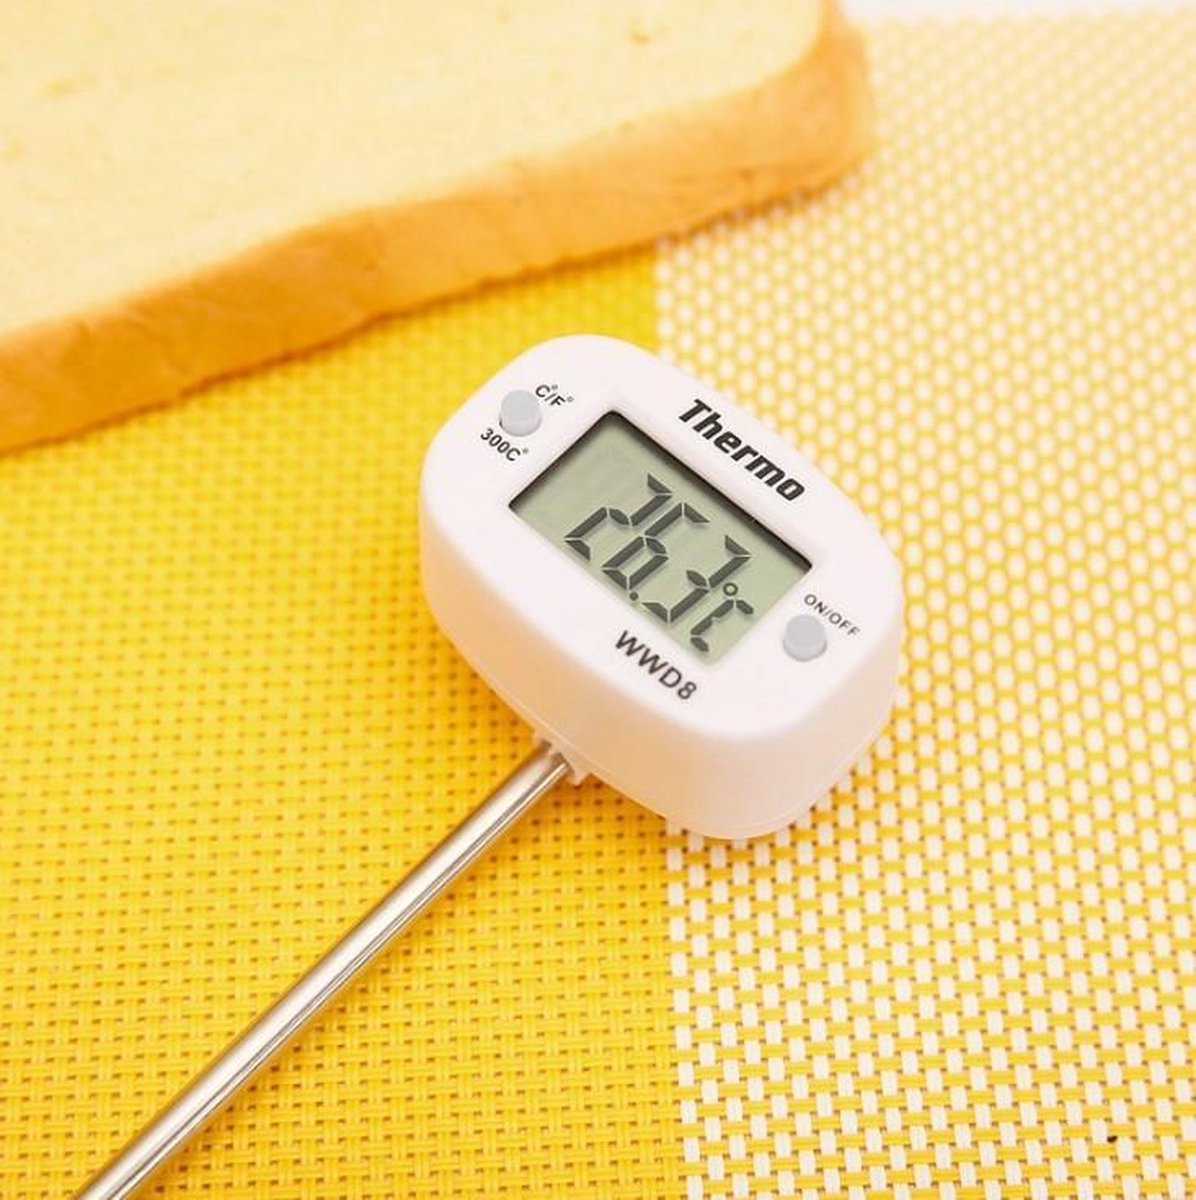 Thermomètre digital pour réfrigérateur et congélateur - Best Santé